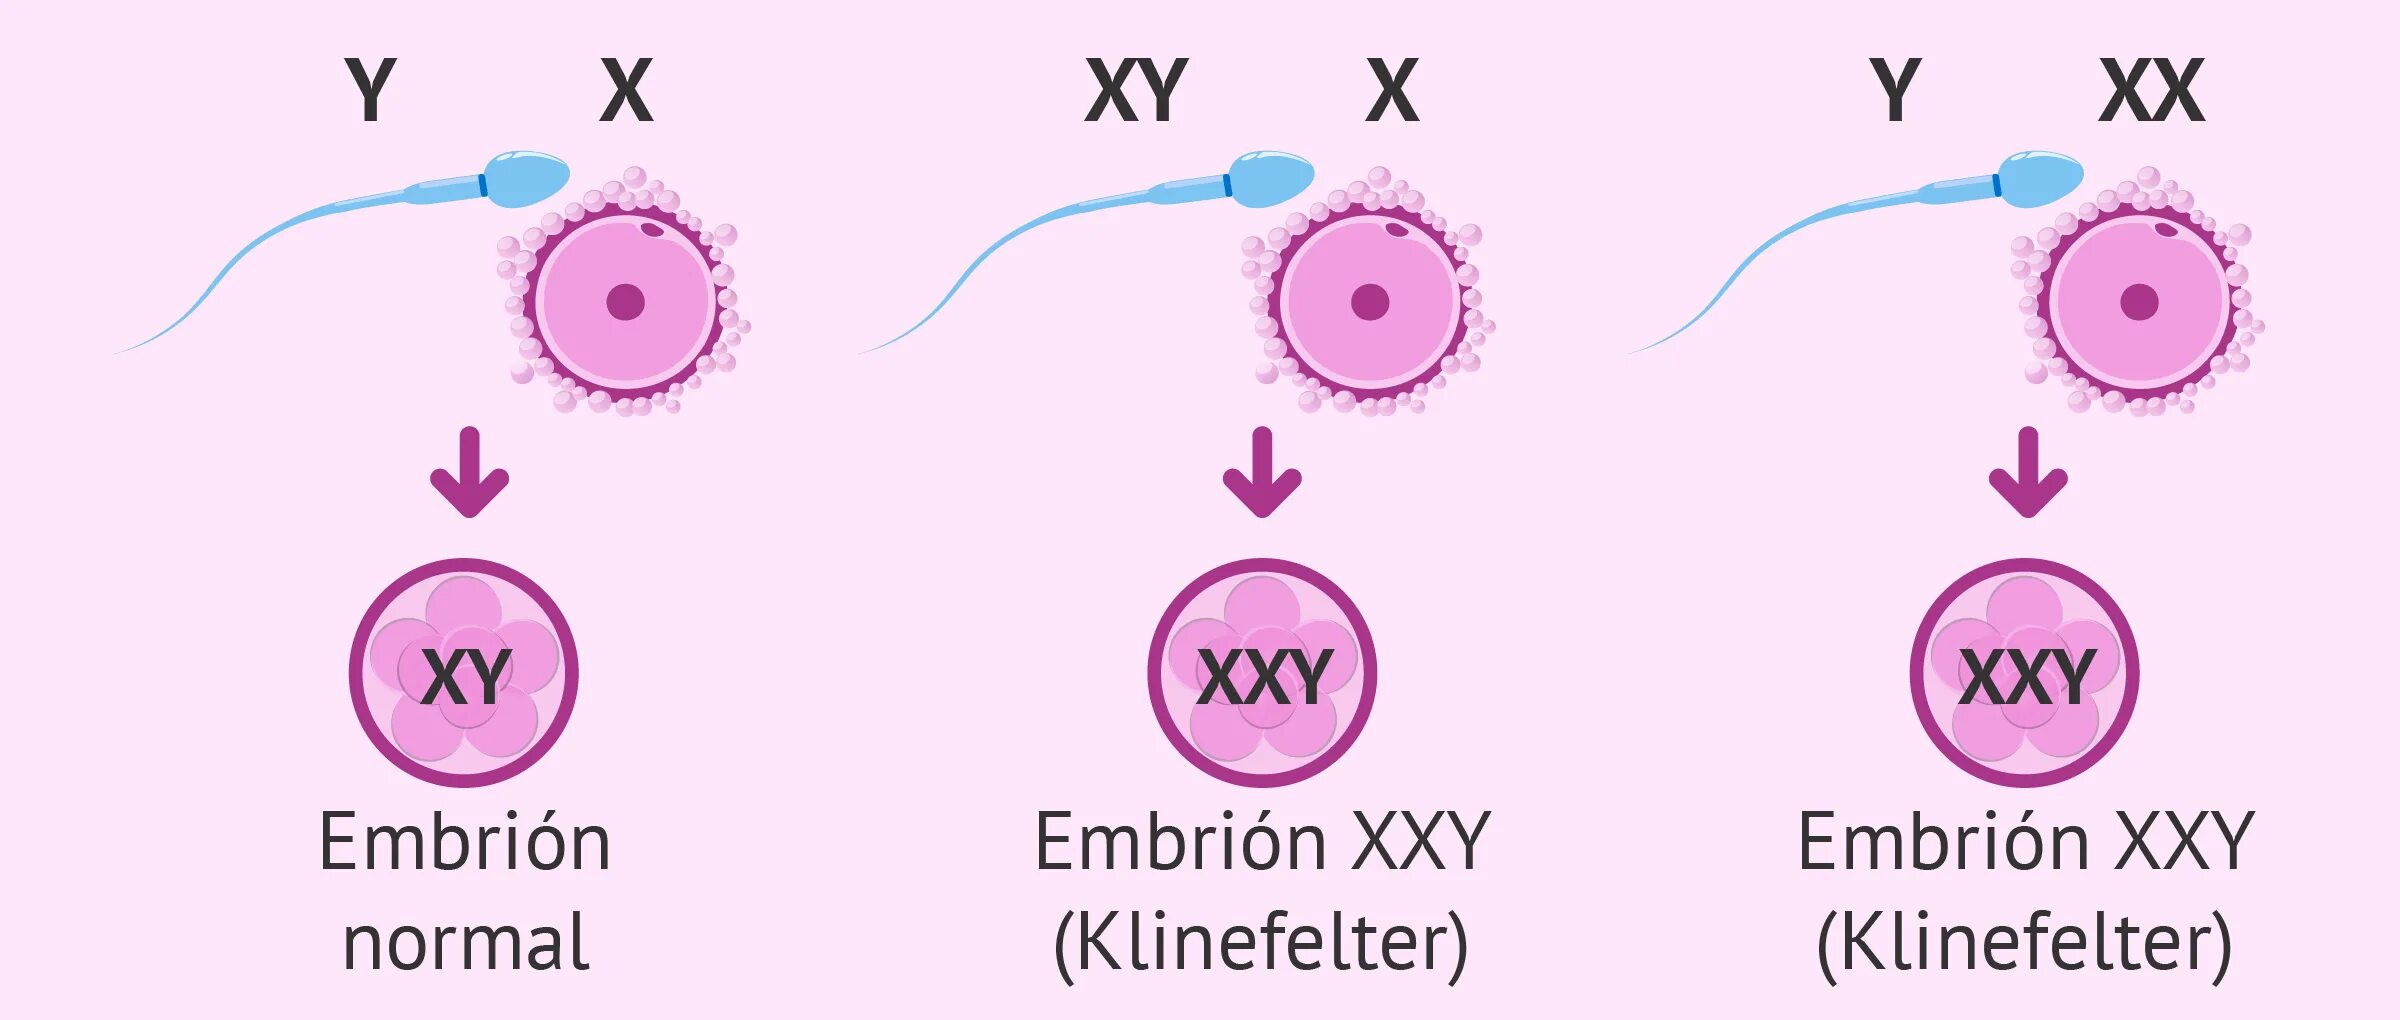 Xxy хромосома. Синдром Кляйнфельтера. Синдром Клайнфельтера схема. Синдром Клайнфельтера этиология. Xxy синдром Клайнфельтера.